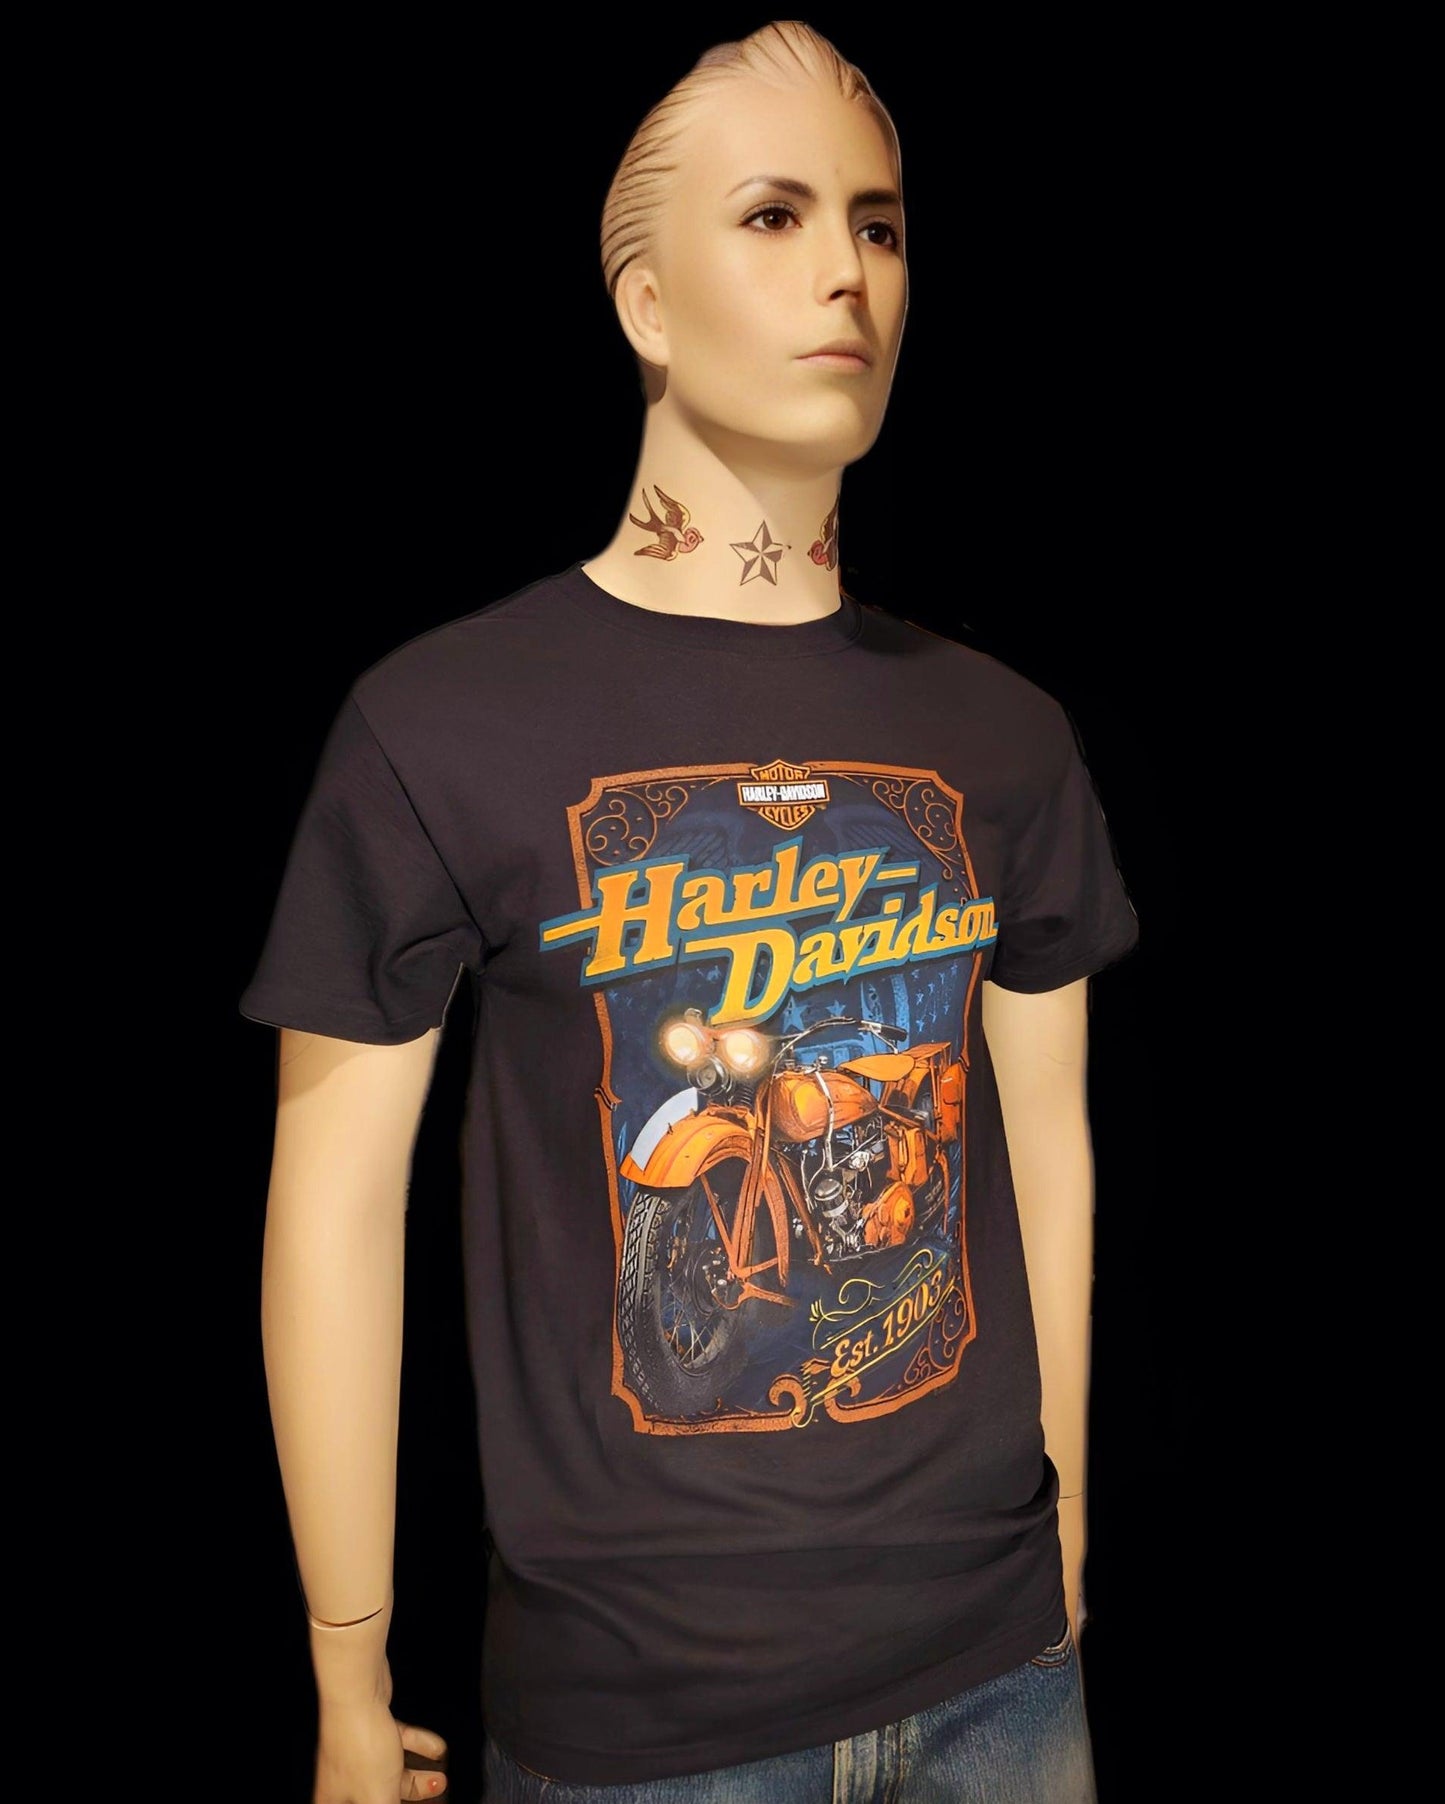 Harley Davidson Of NYC Vintage-Gold Men's Dealer T-shirt - Harley Davidson Of Nyc